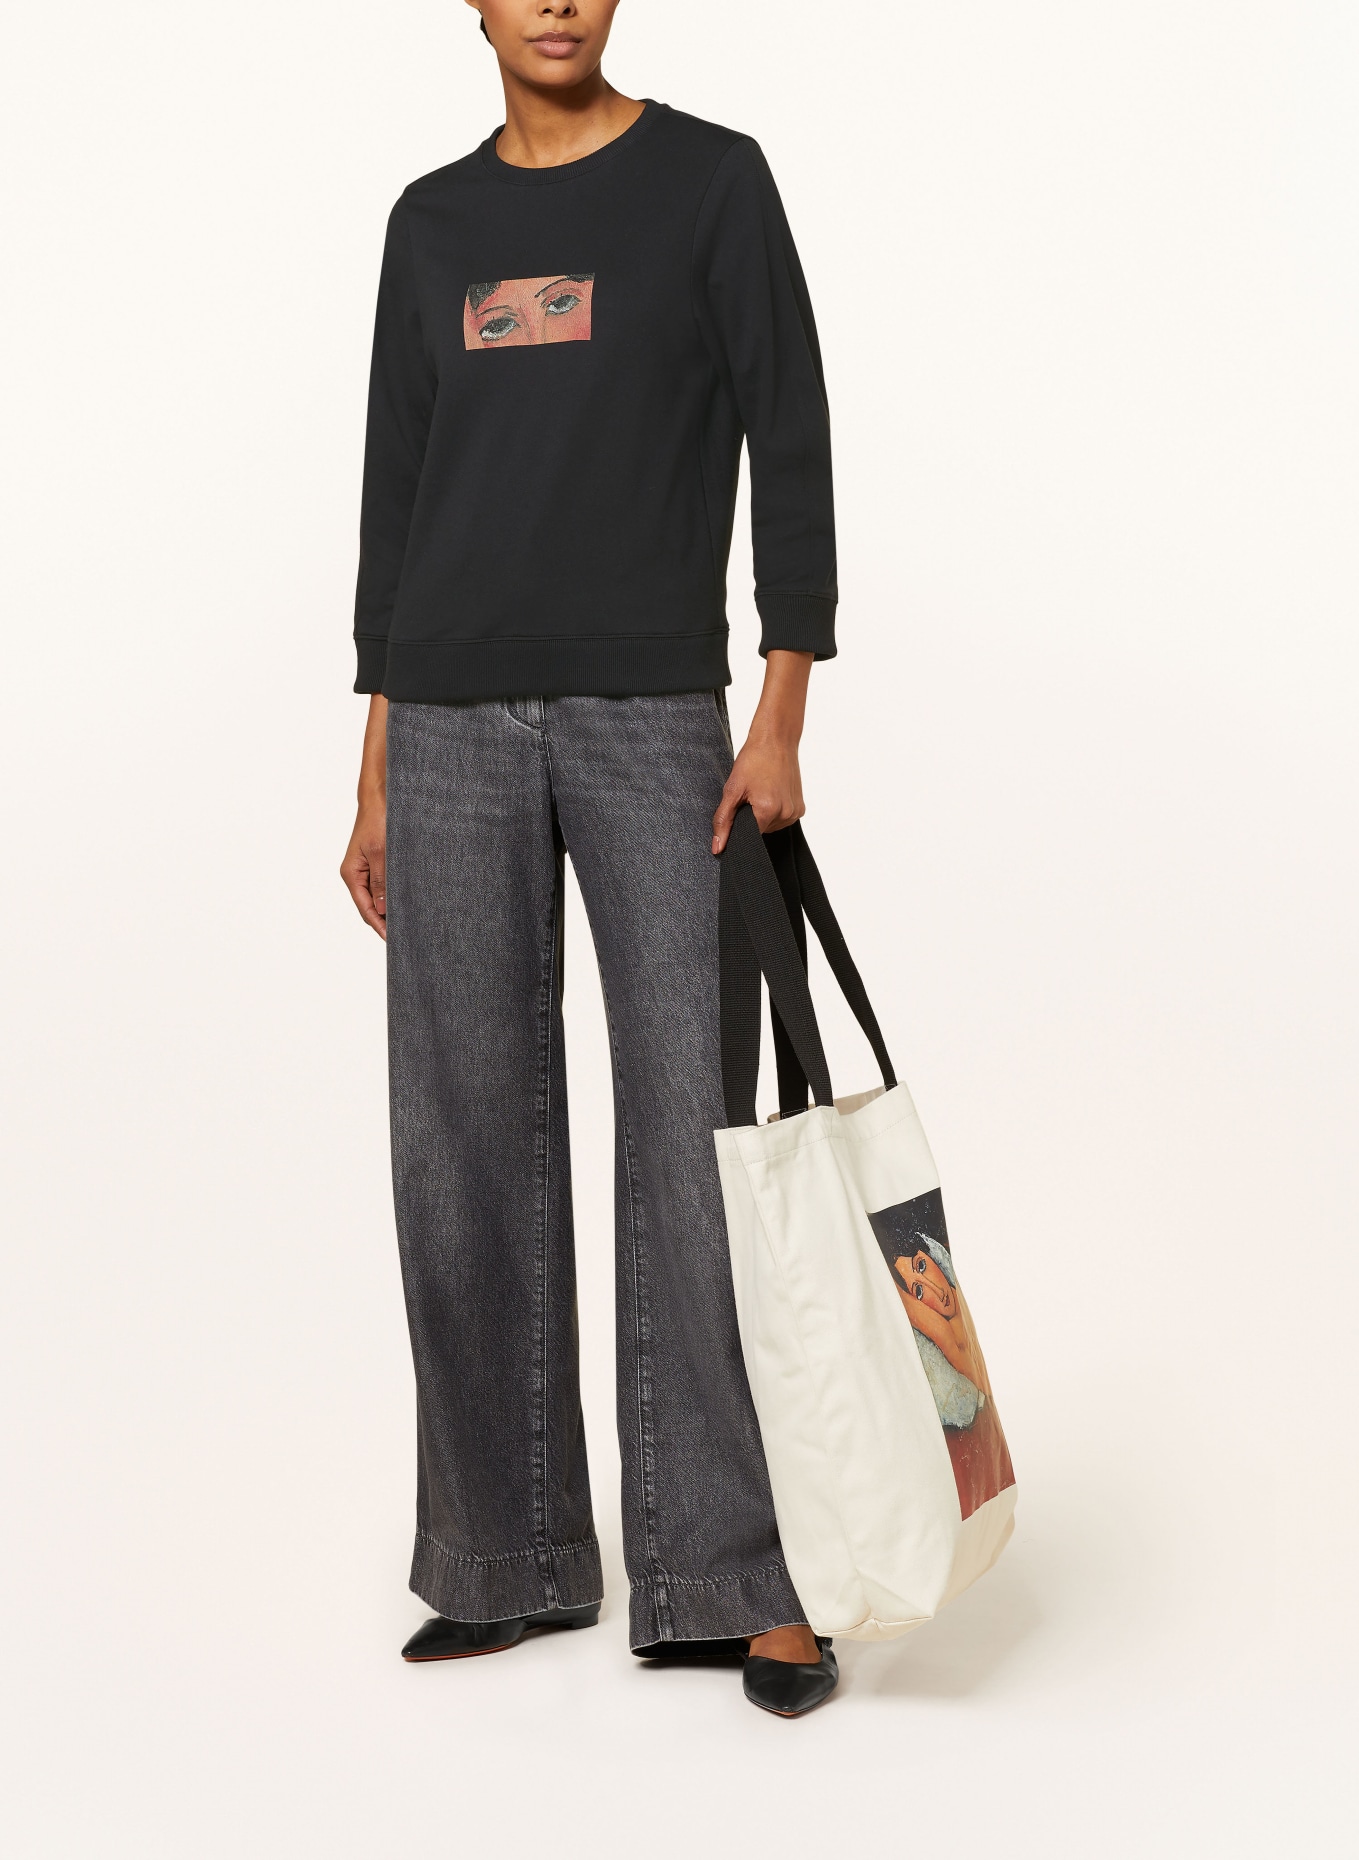 LUISA CERANO Sweatshirt, Color: BLACK (Image 2)